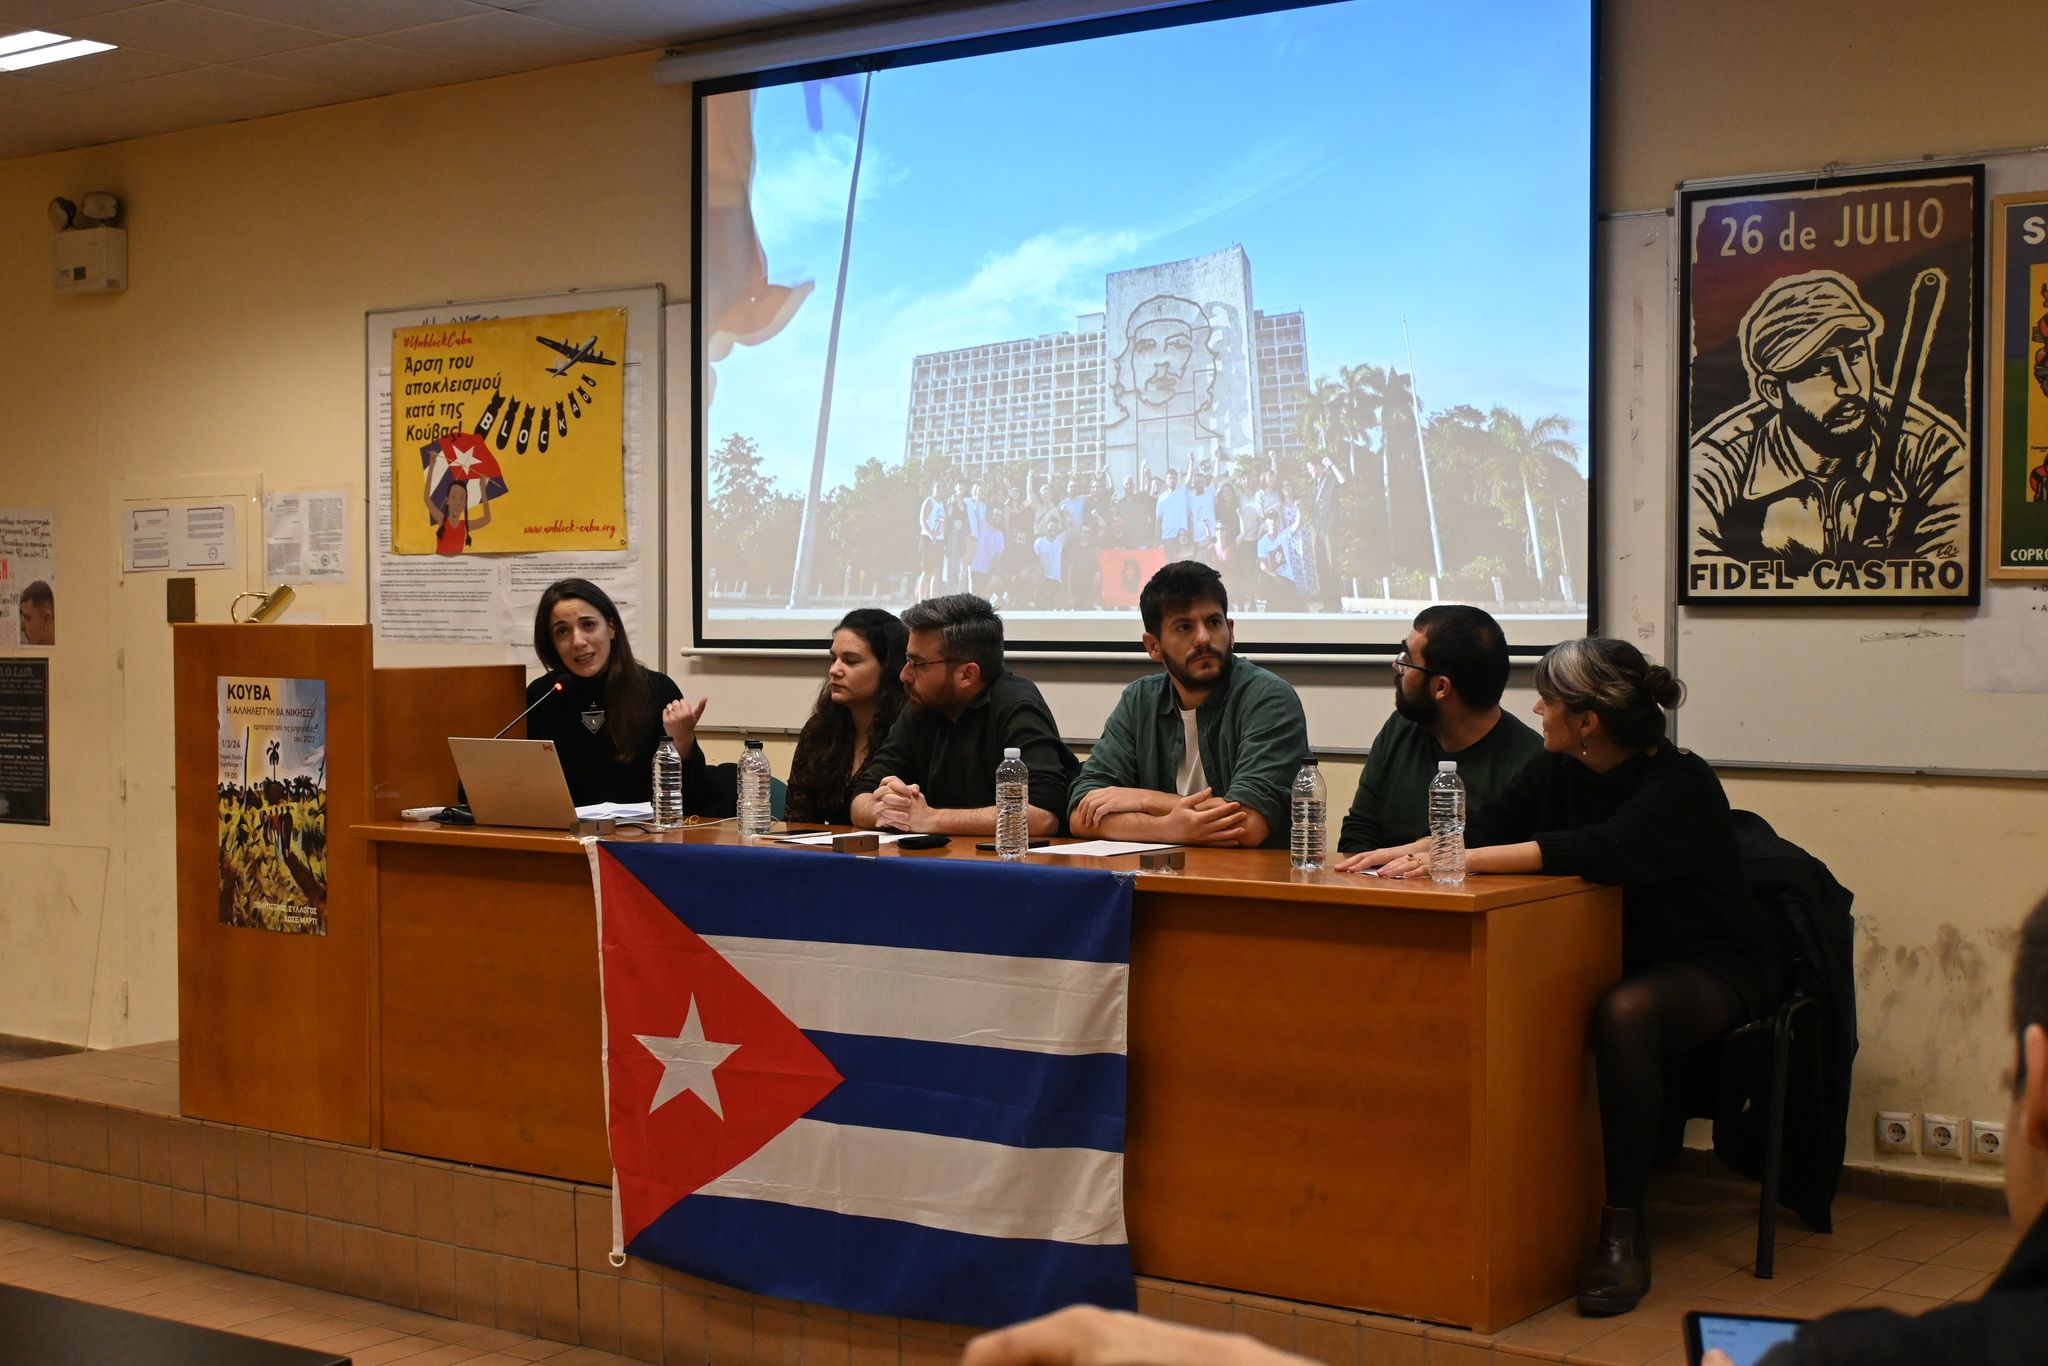 Μια εκδήλωση για την Κούβα που επιμένει στον δικό της δρόμο